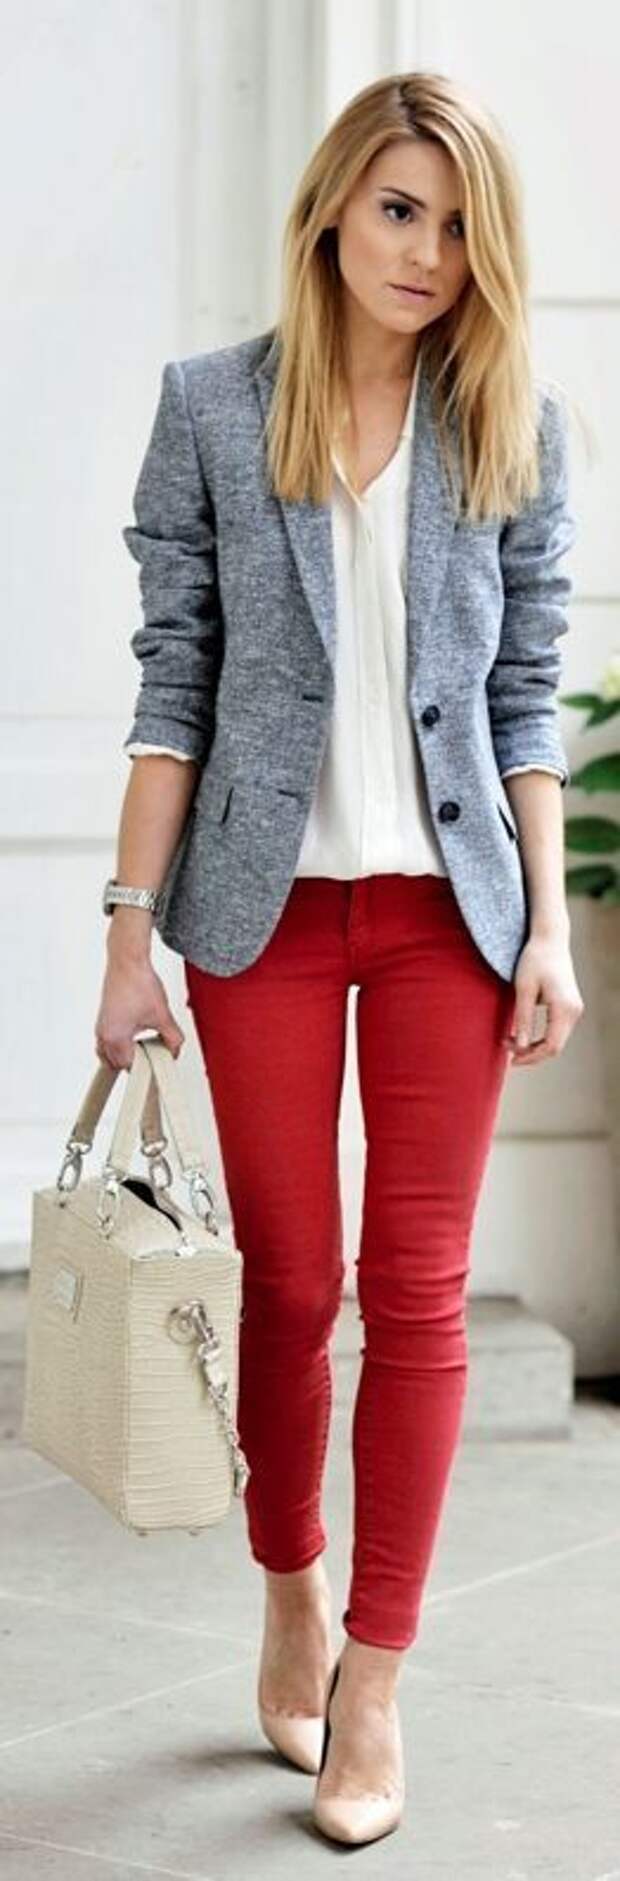 33 идеи, как одеваться в офис: красные узкие брюки, серый пиджак